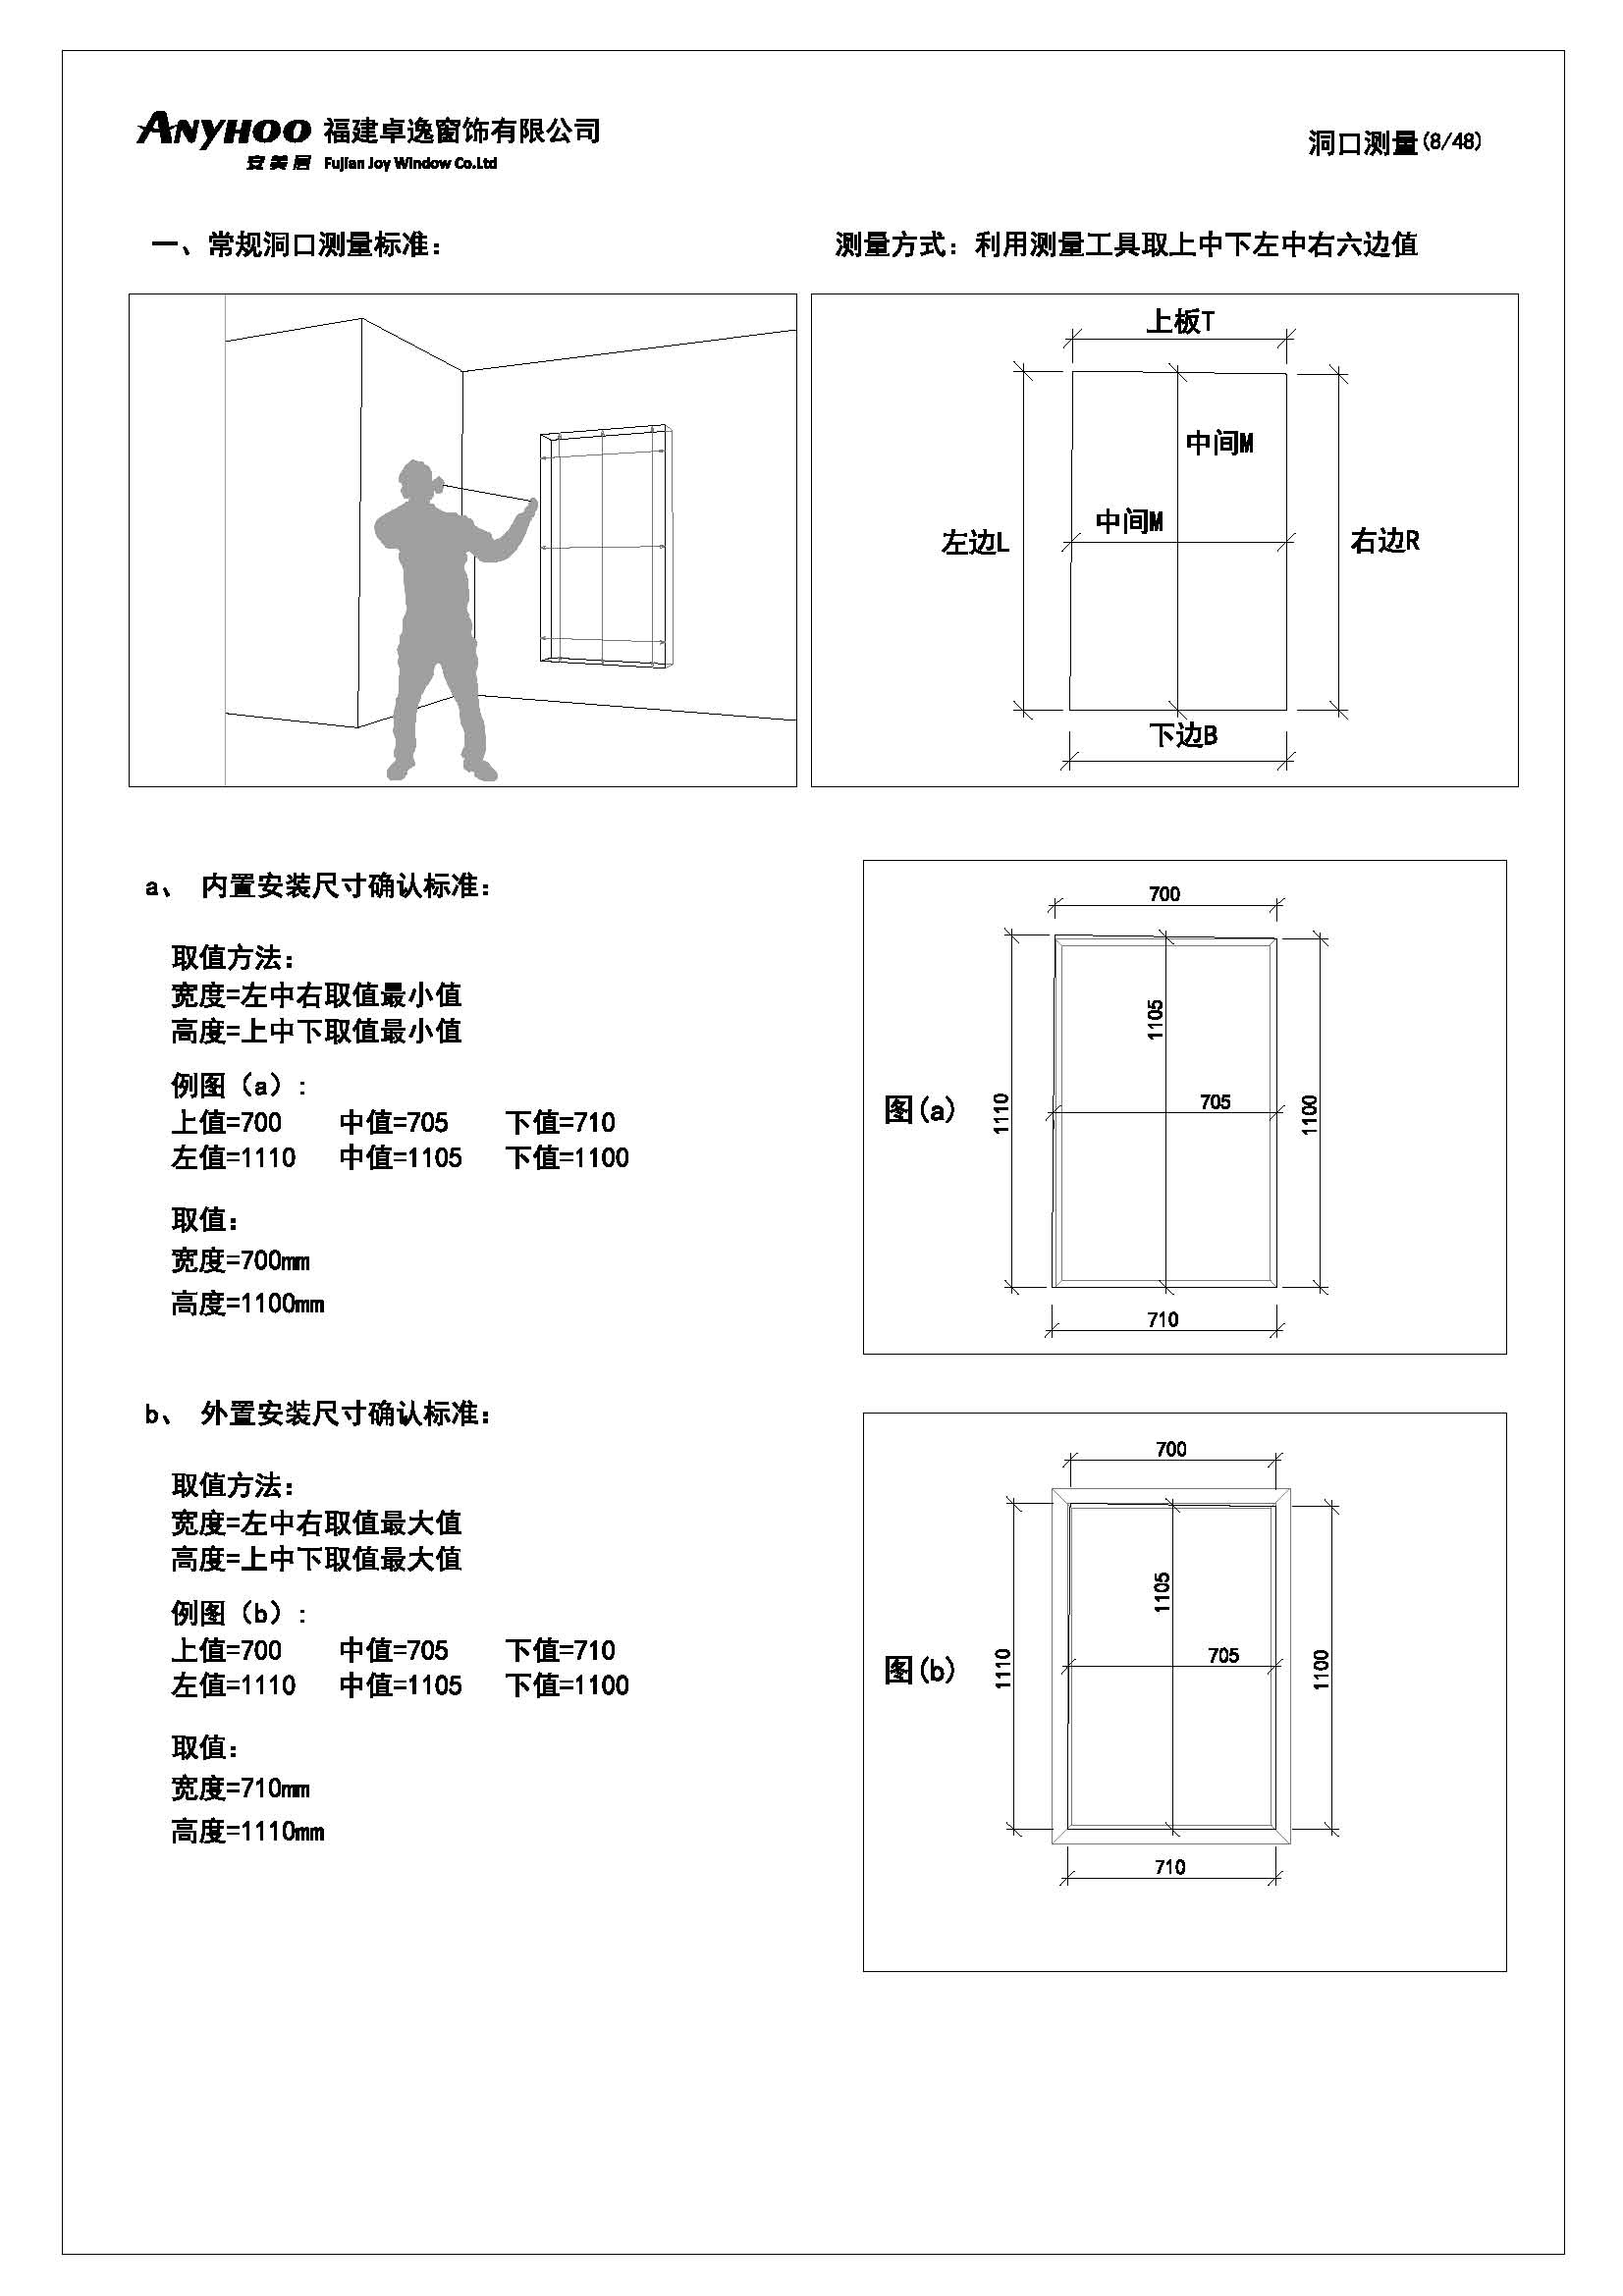 anyhoo技术手册中文版20190711(1)_页面_08.jpg